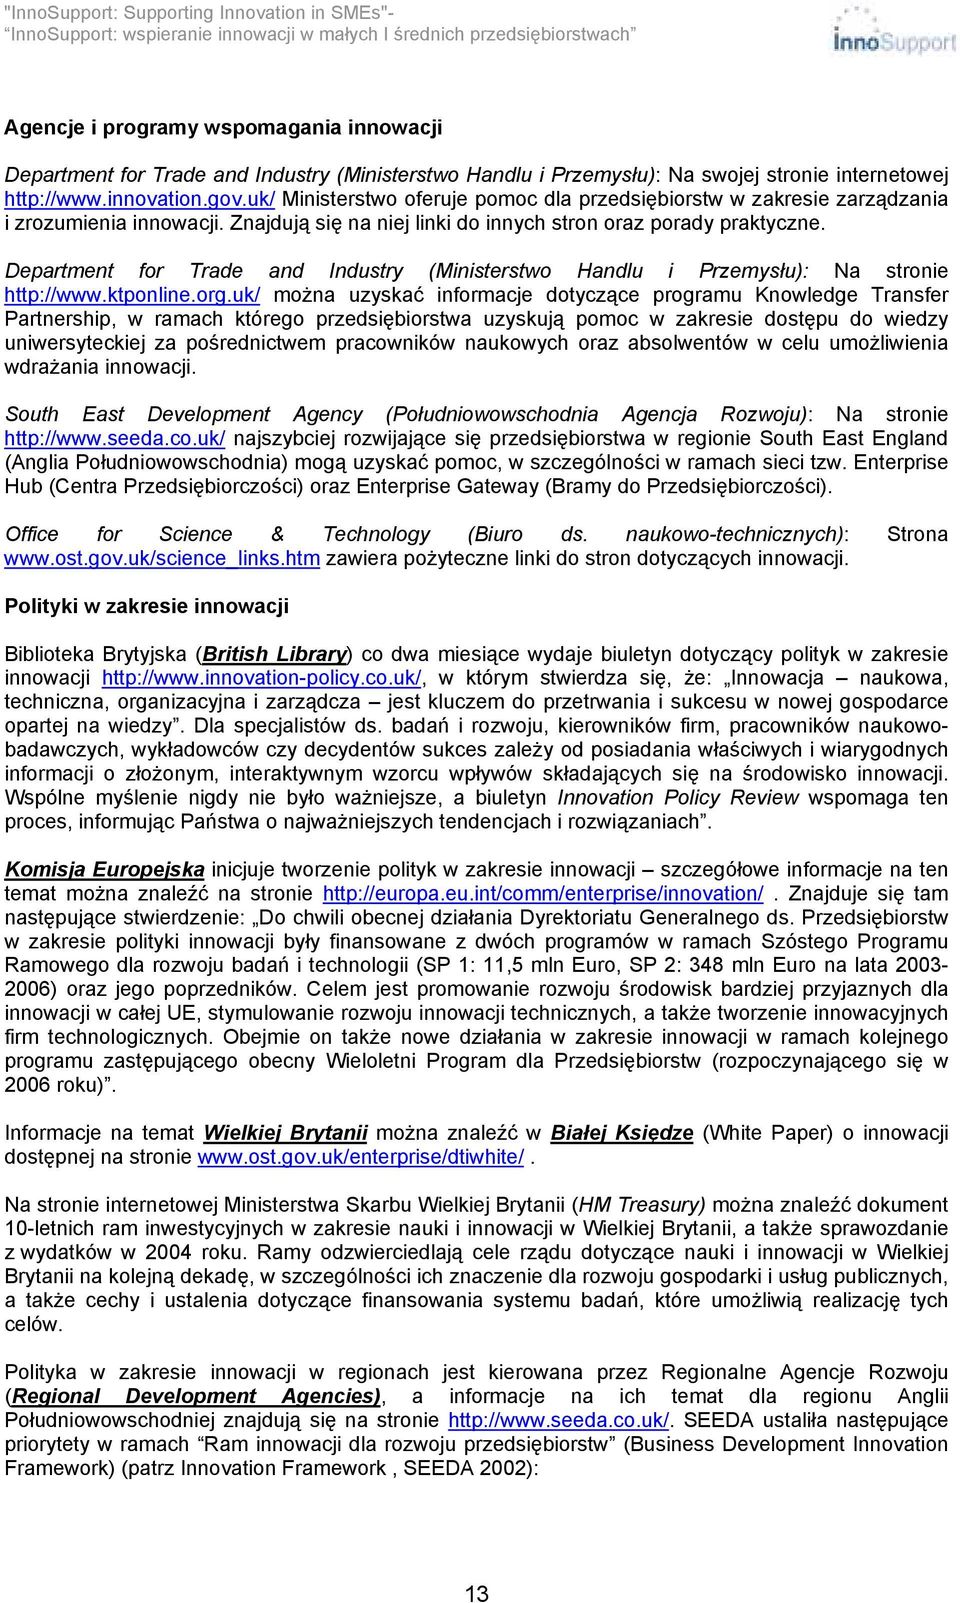 Department for Trade and Industry (Ministerstwo Handlu i Przemysłu): Na stronie http://www.ktponline.org.